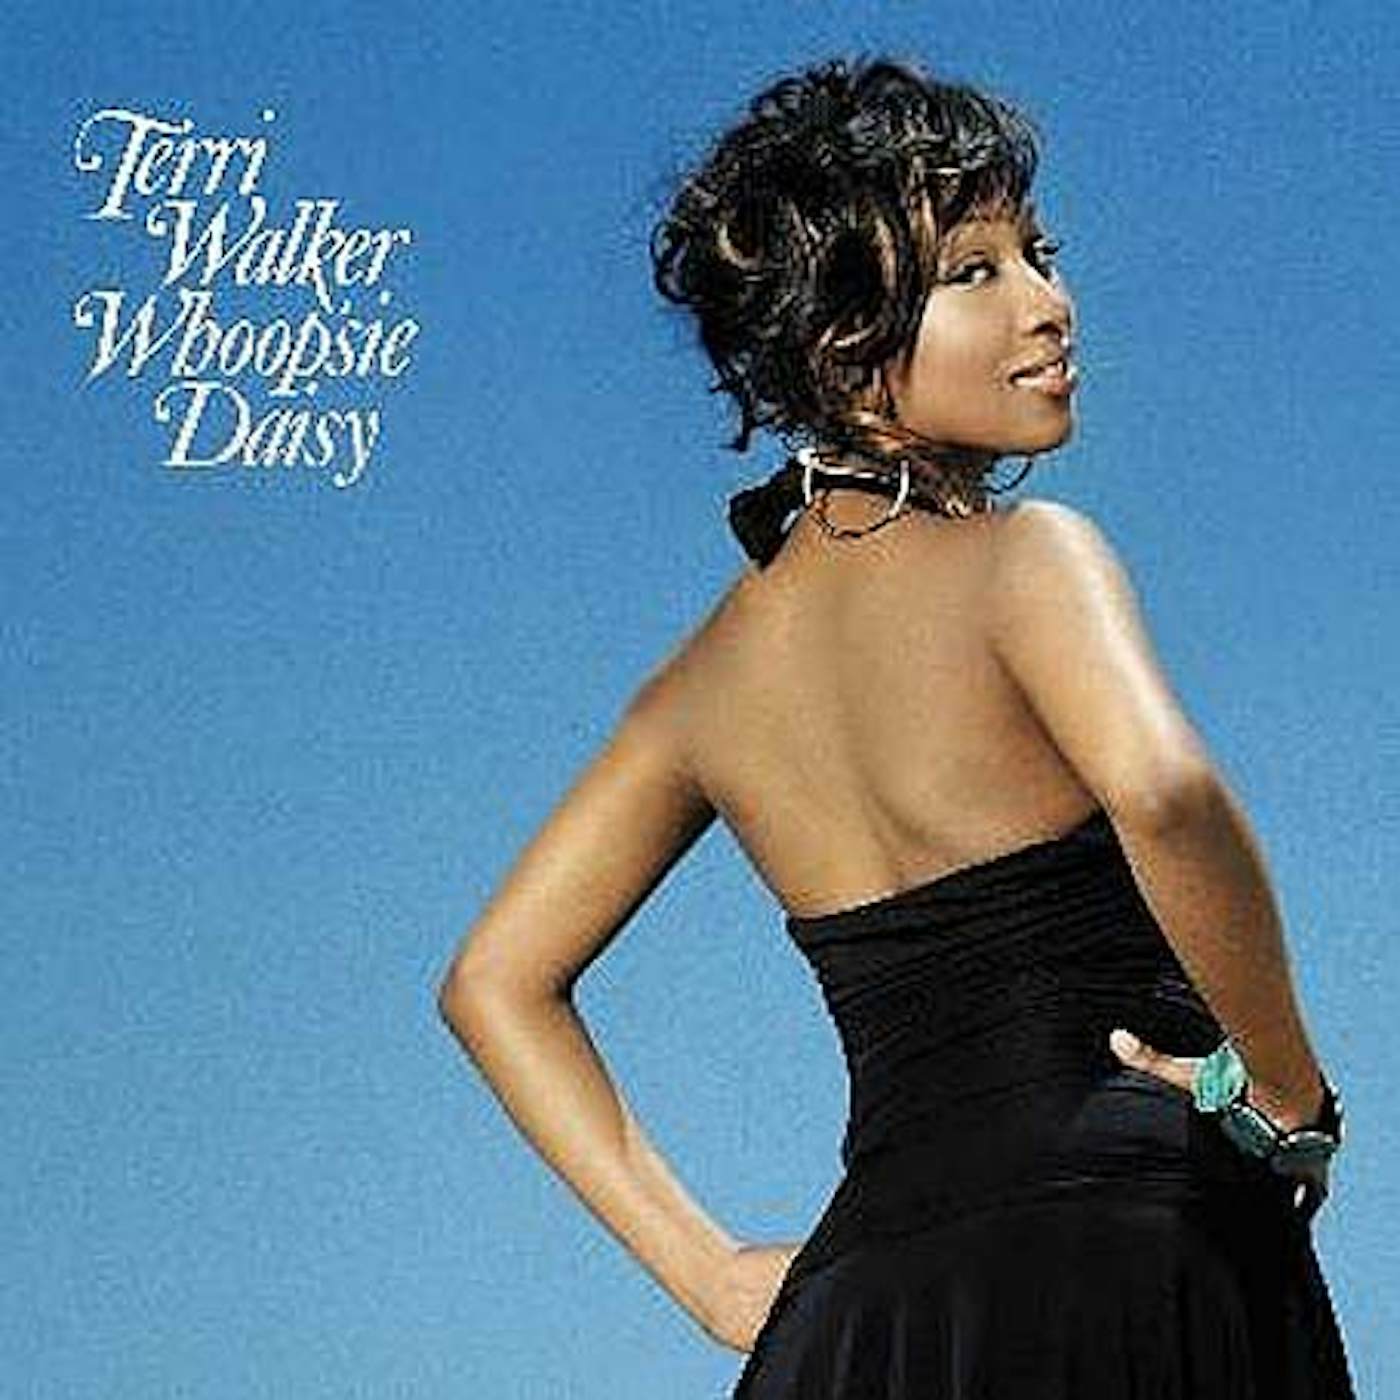 Terri Walker Whoopsie Daisy Vinyl Record